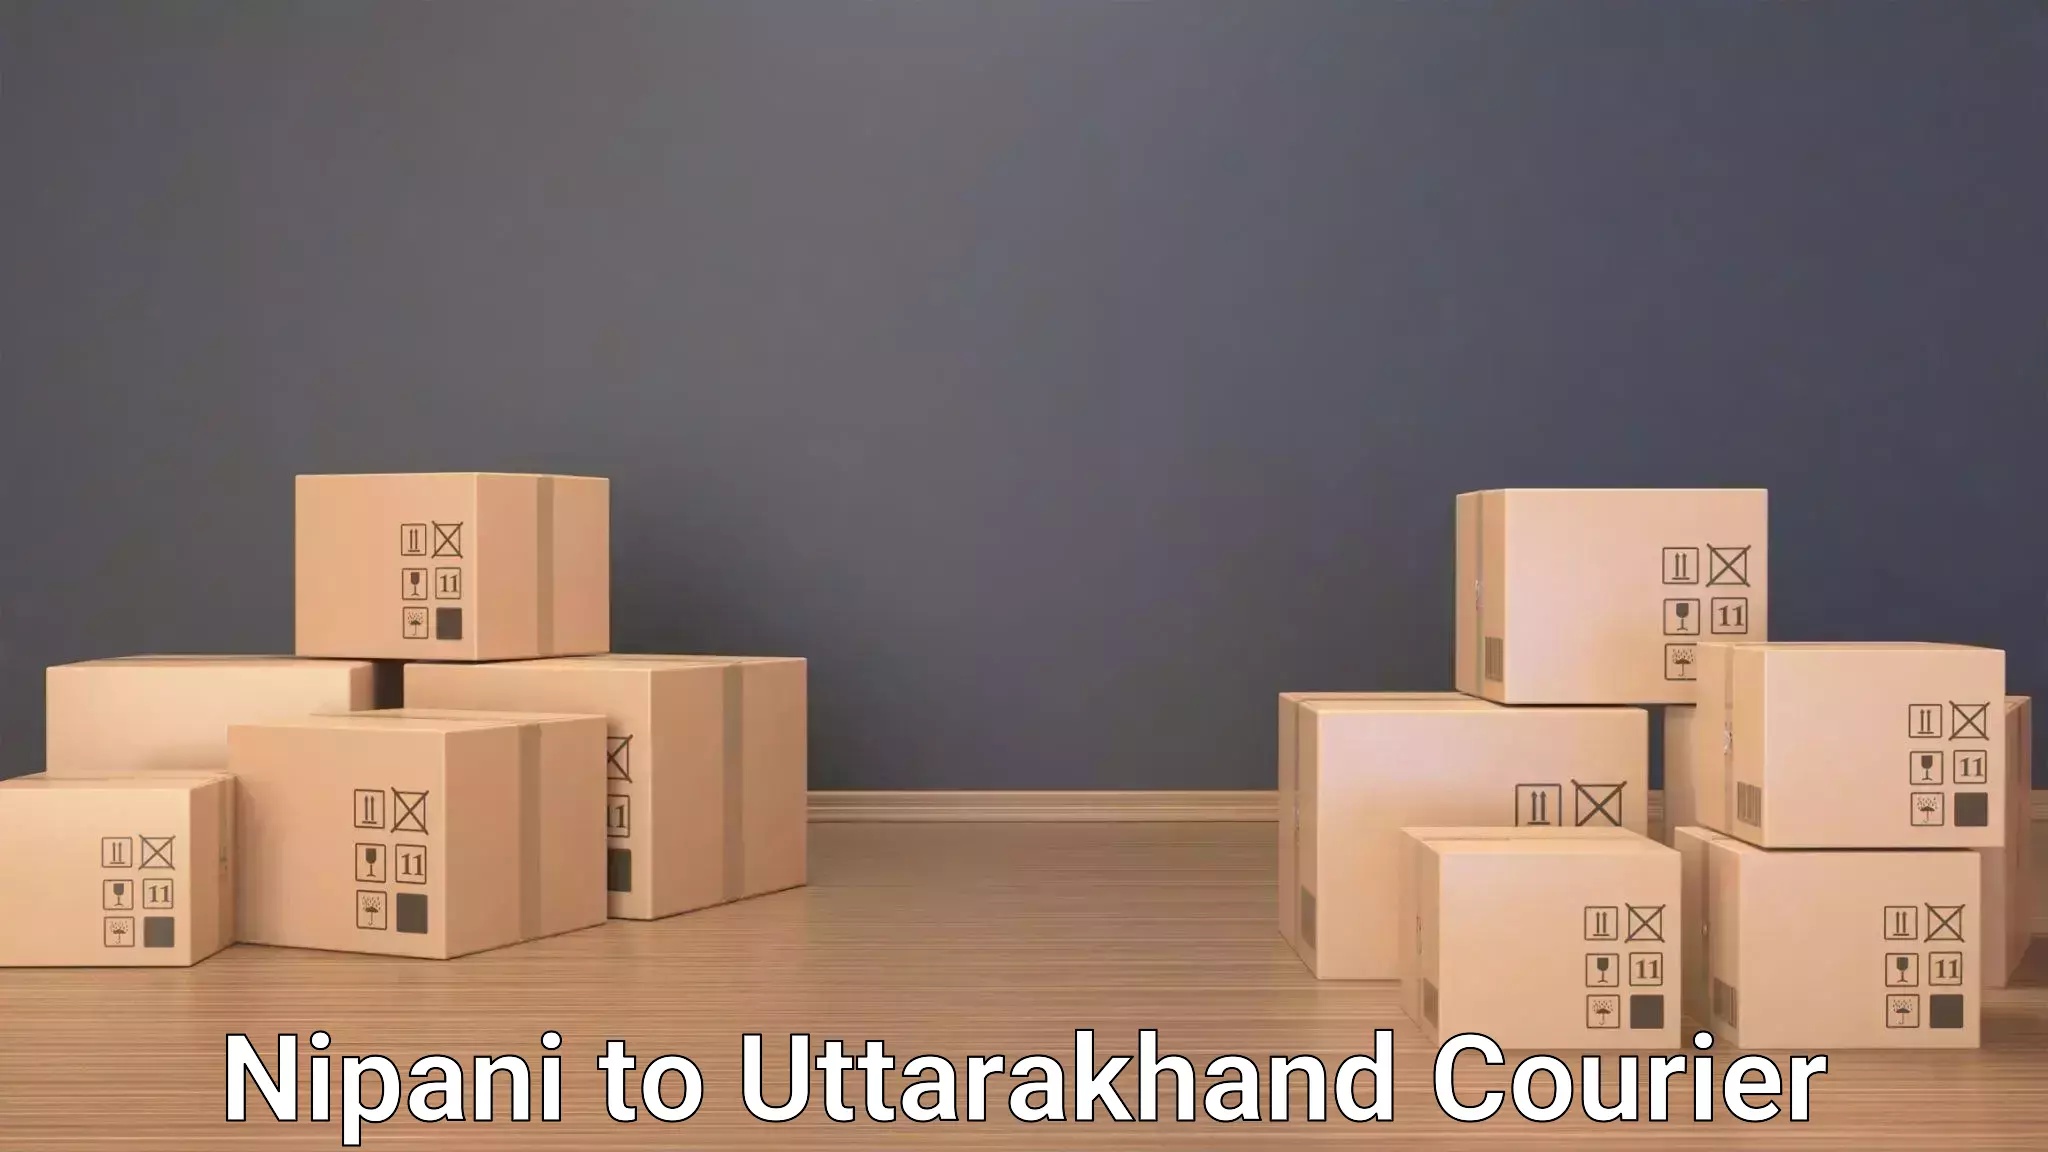 Luggage transport consulting Nipani to Uttarakhand